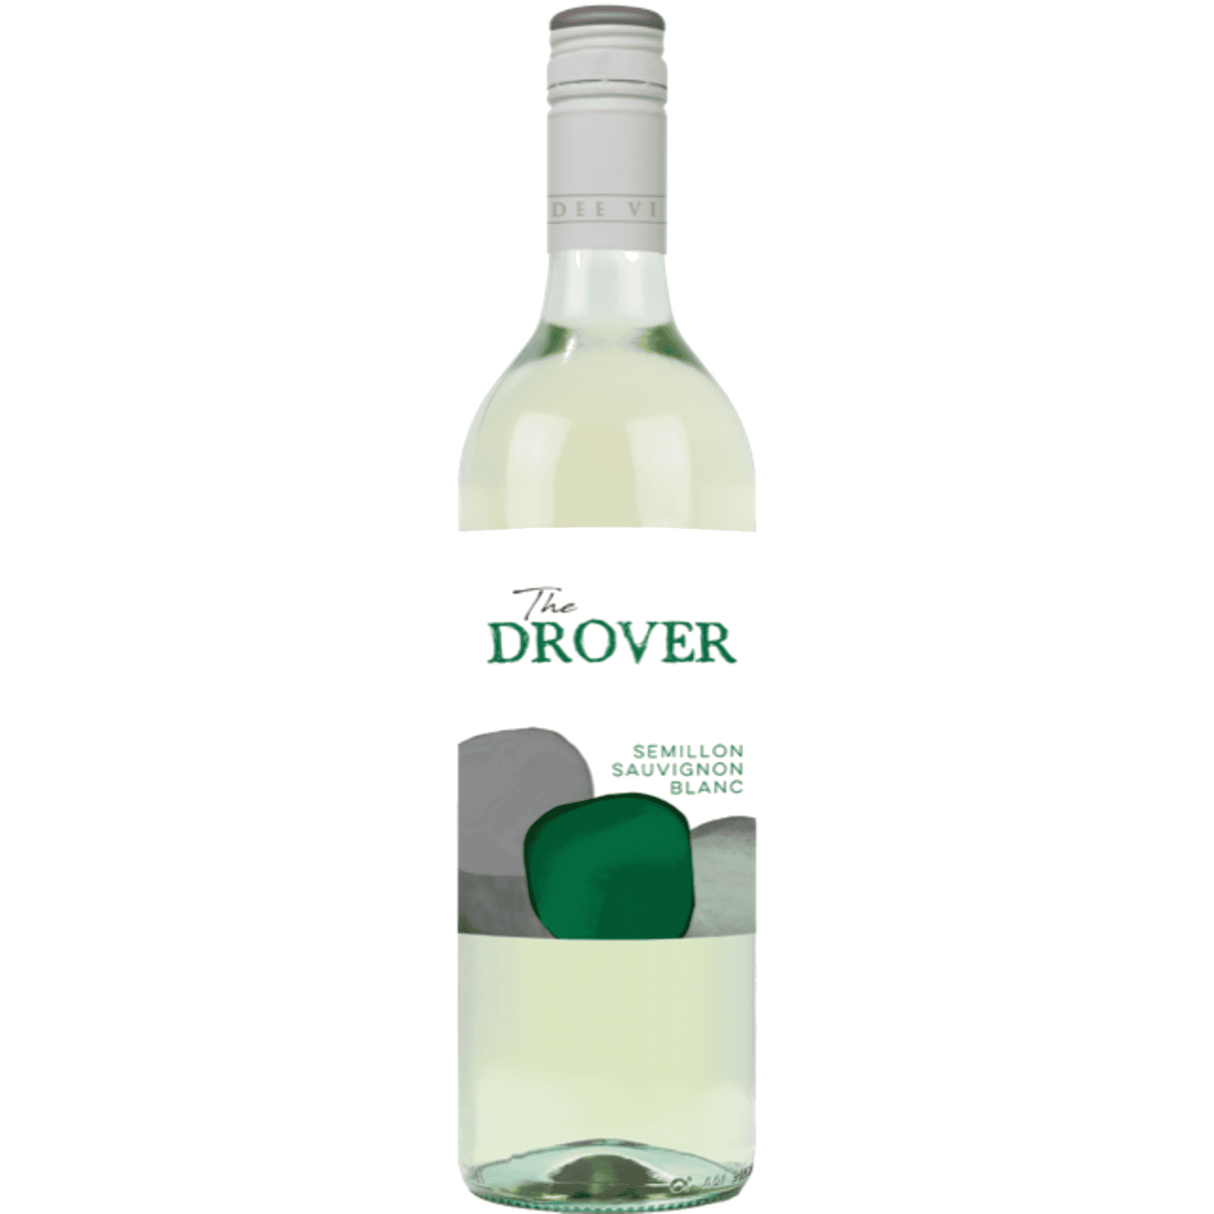 The Drover Semillon Sauvignon Blanc 750ml